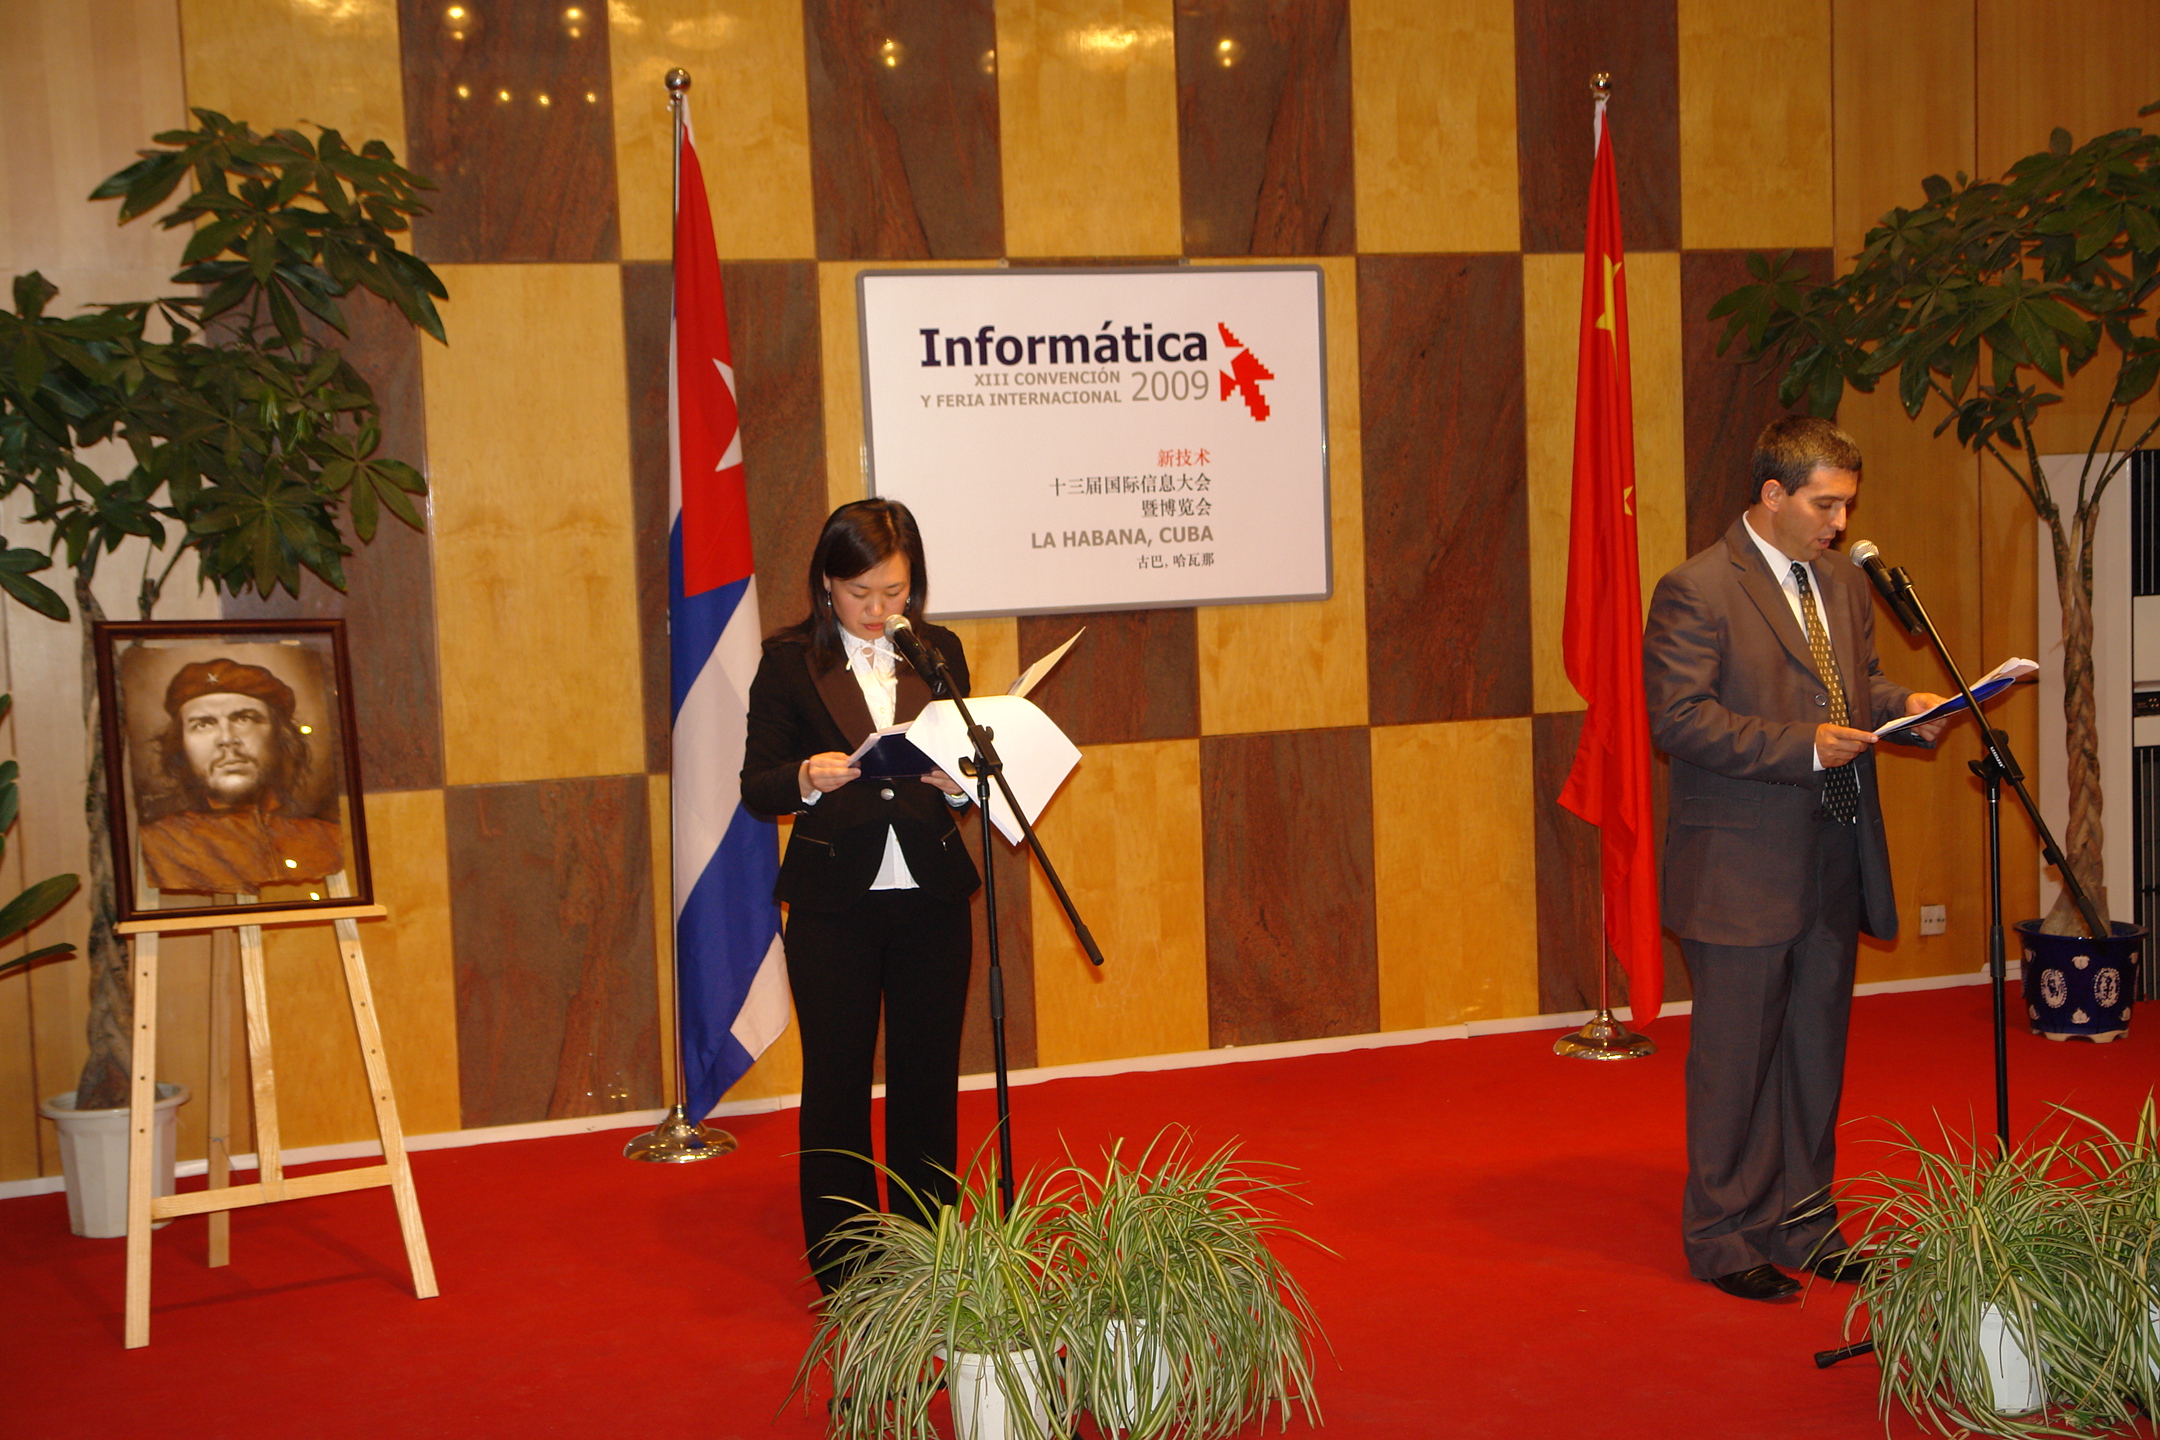 2009 Lanzamiento en China de INFORMATICA 2009 por el Presidente de su Comité Organizador, actual Viceprimer Ministro de Cuba Jorge Luis Perdomo Di-Lella